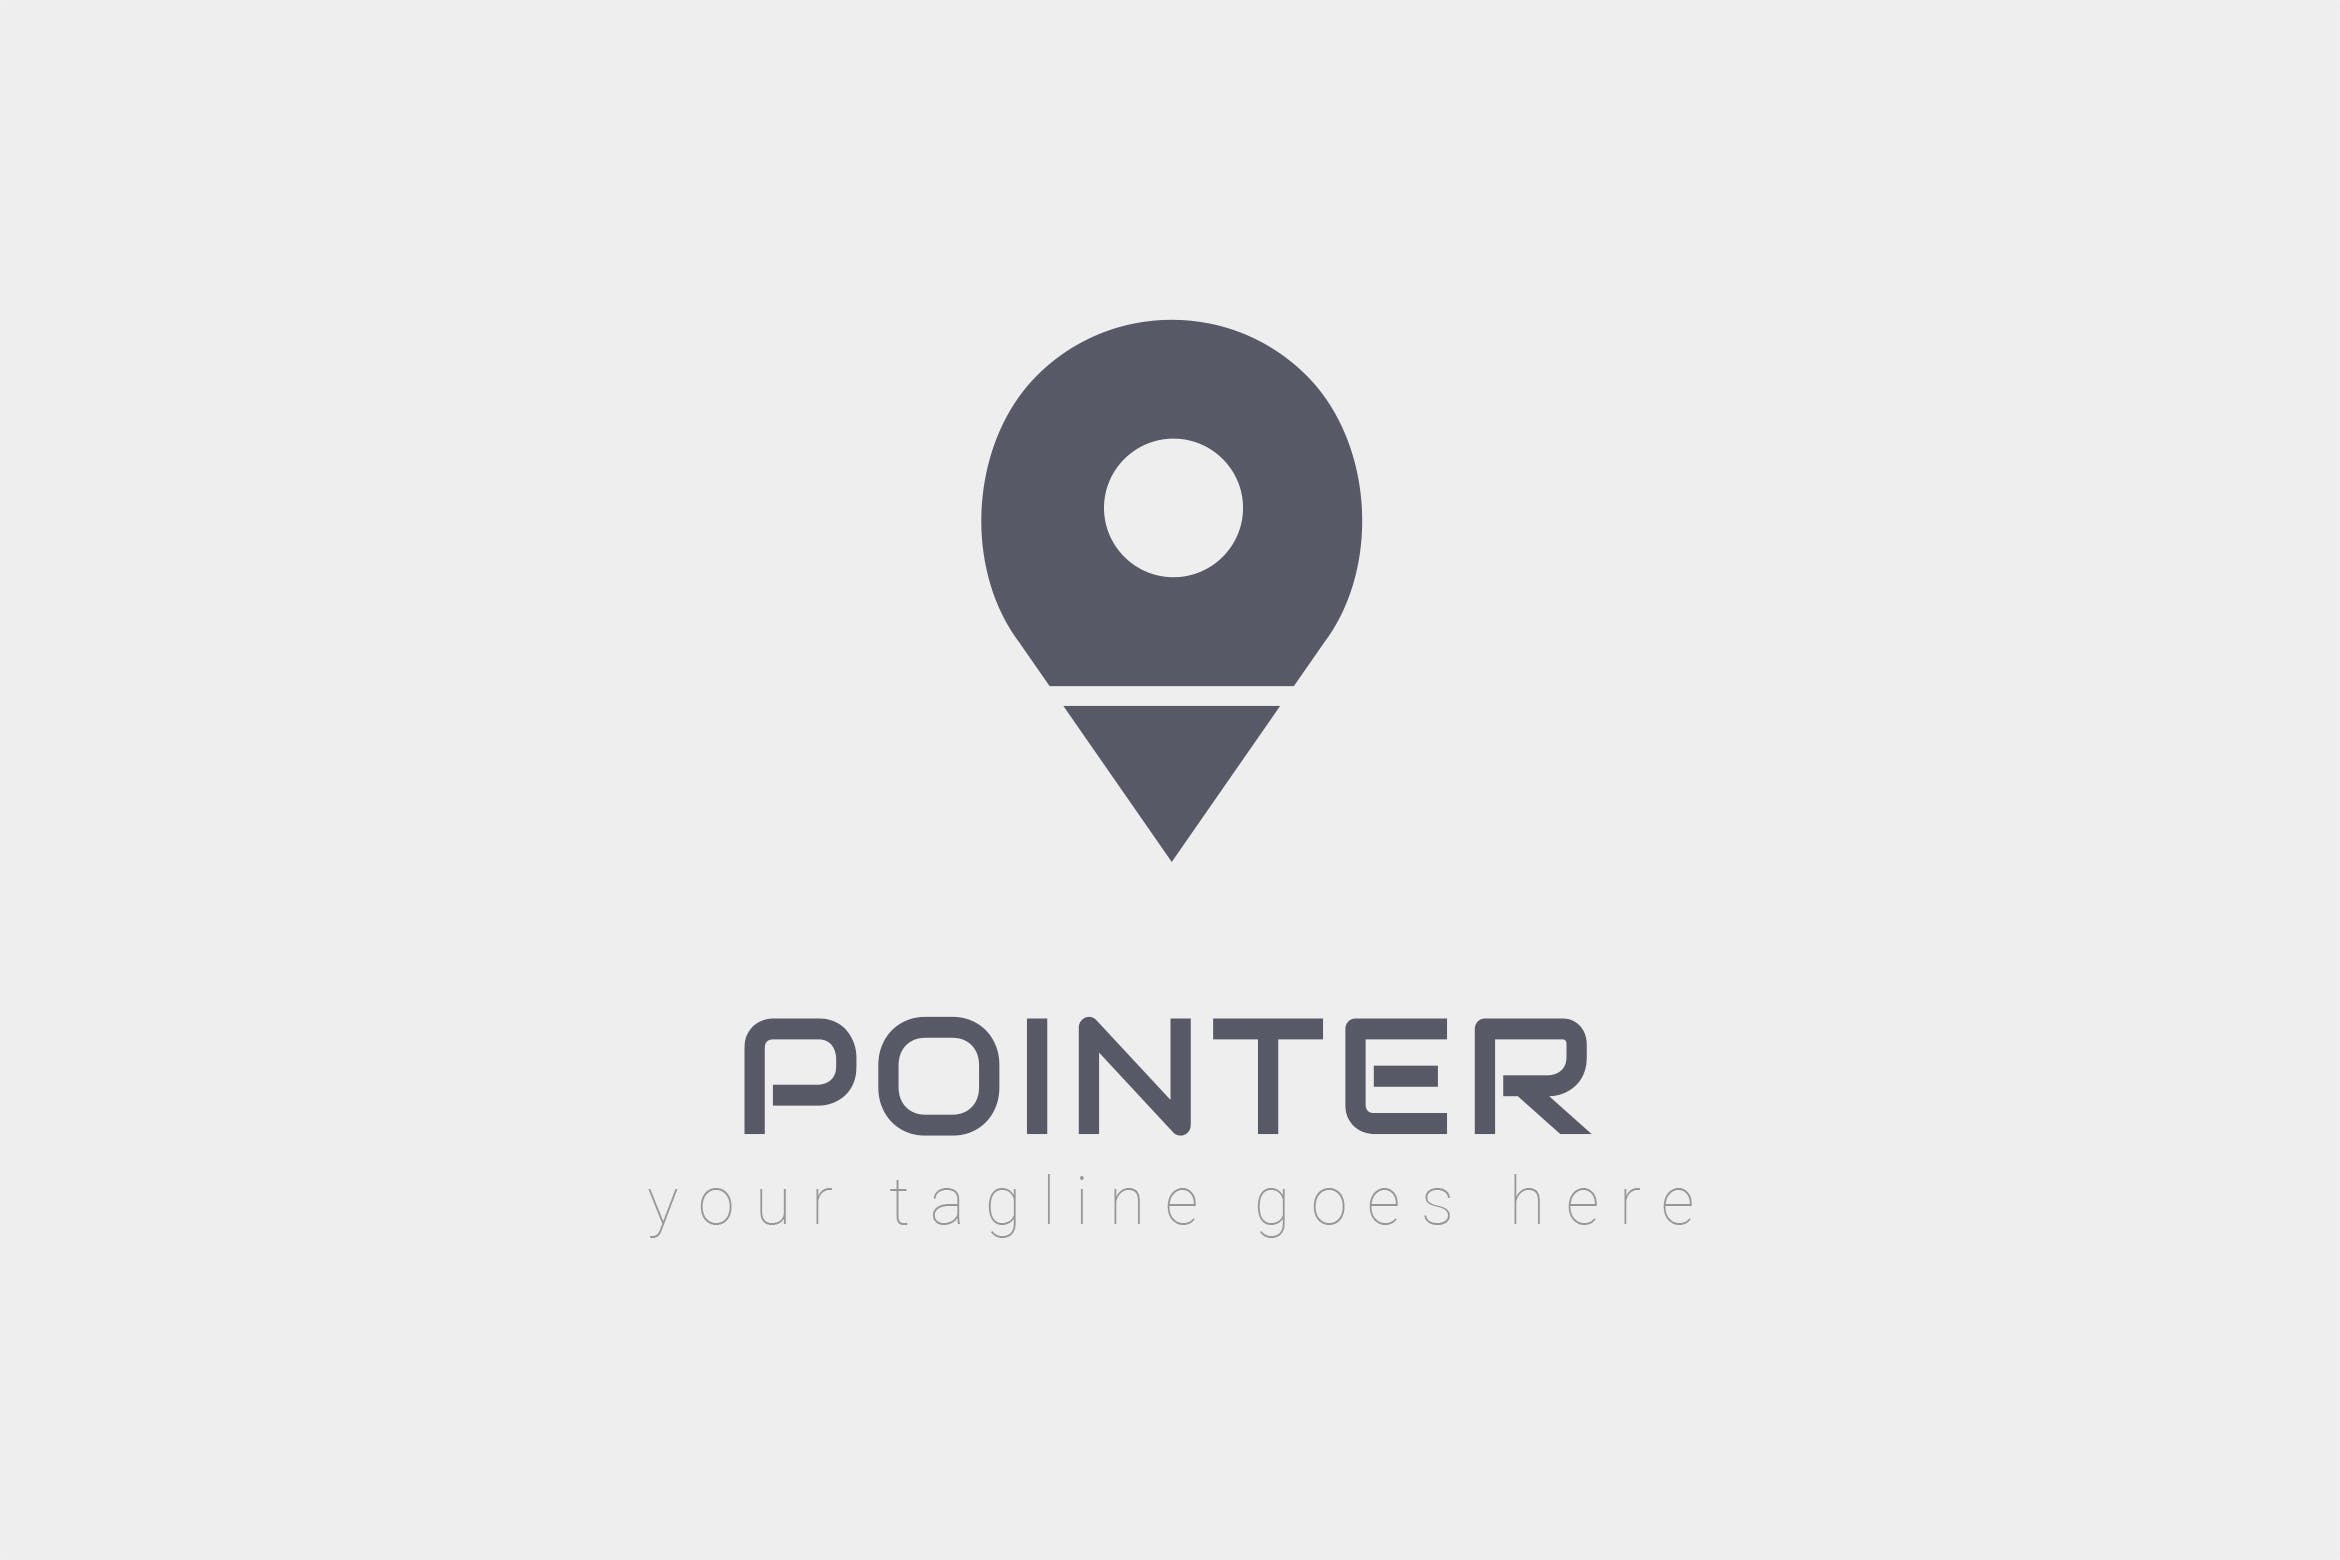 旅游/地图品牌Logo设计16设计网精选模板 Pointer – Logo Design插图